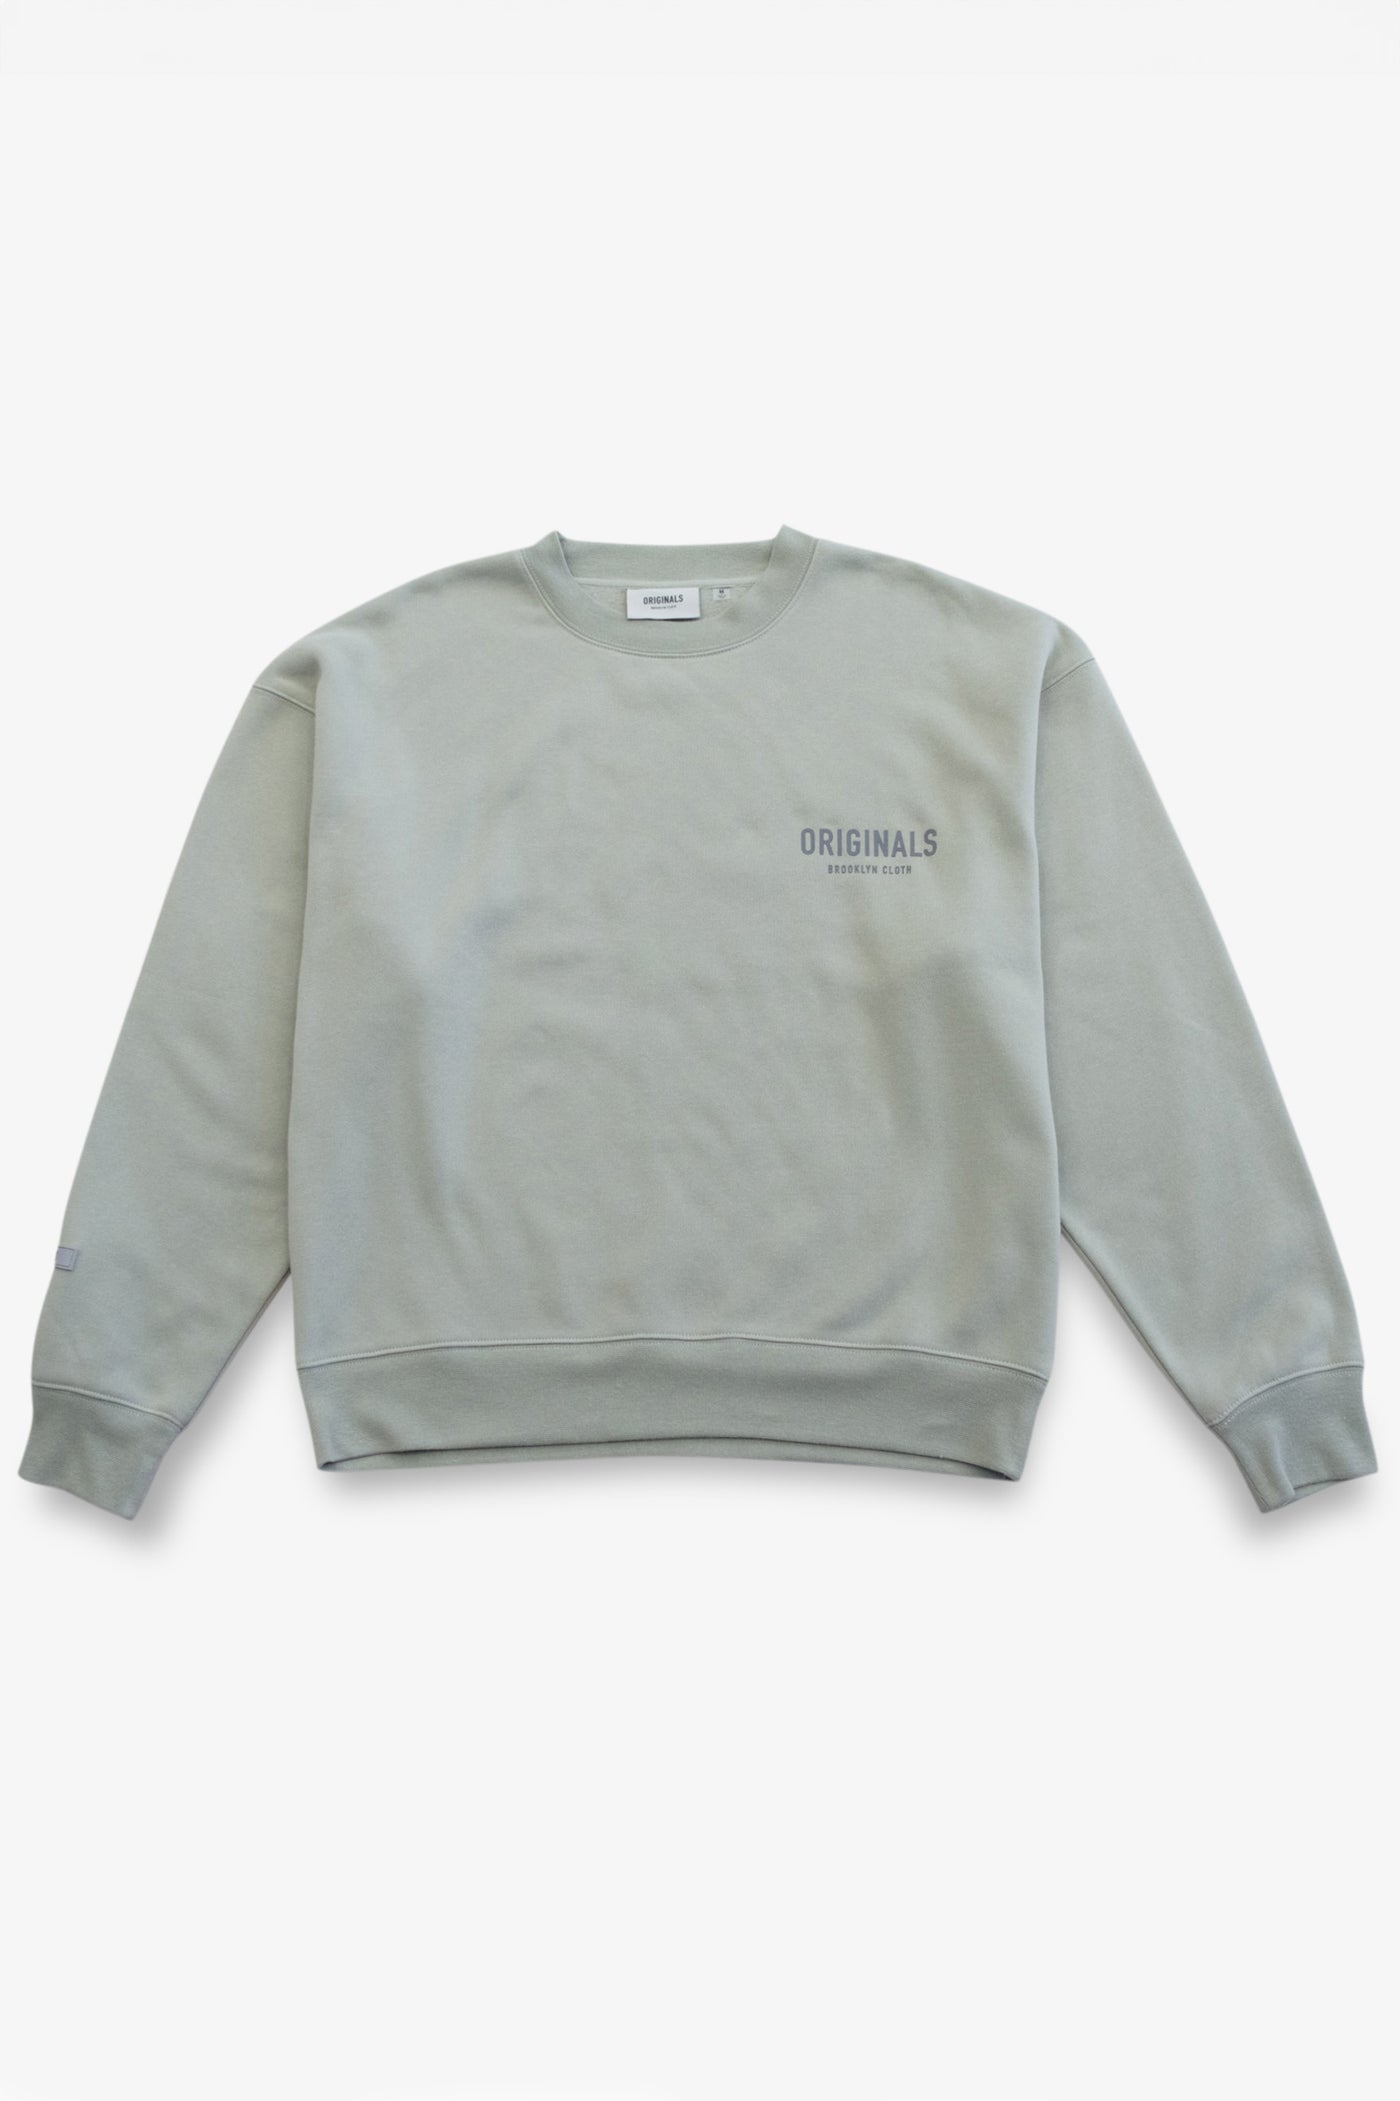 Men's Hoodies and Sweatshirts | Brooklyn Cloth